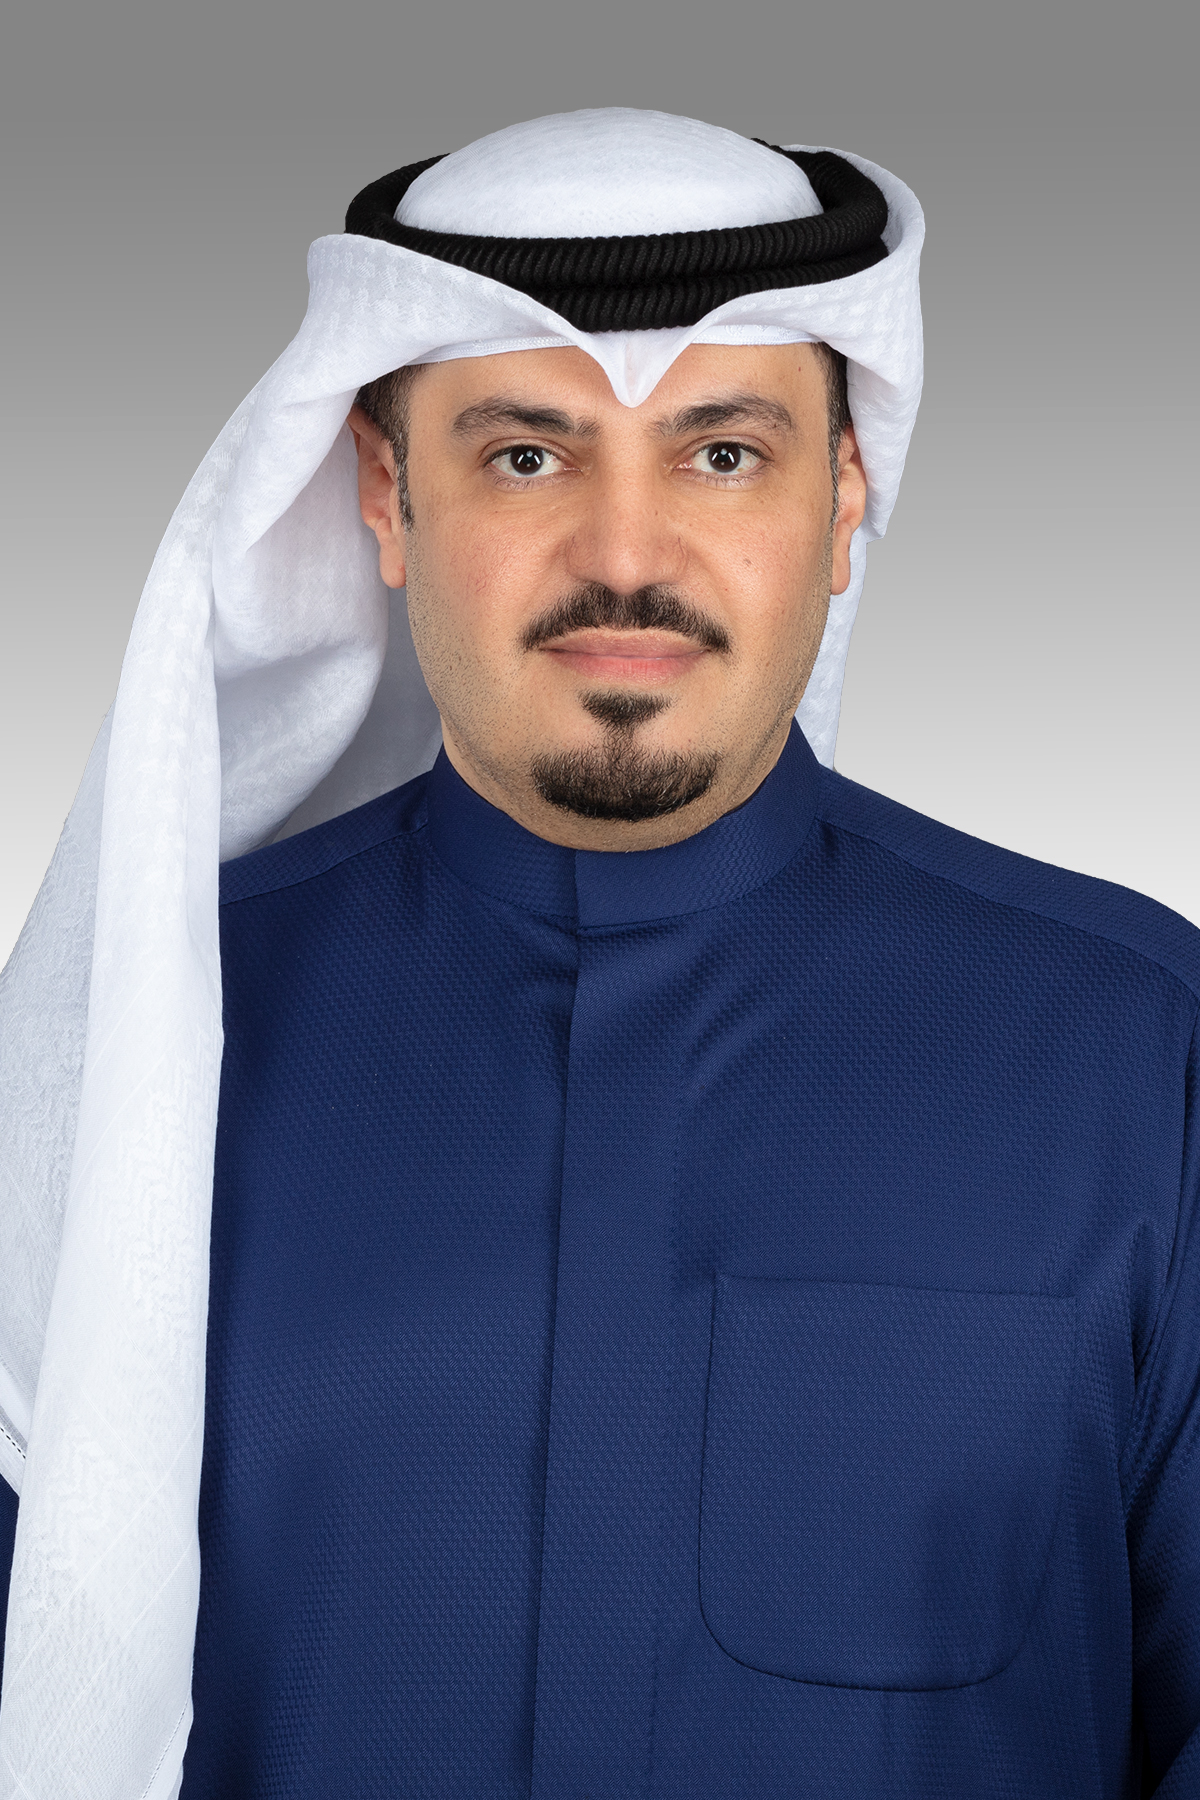 هشام الصالح يقترح تسجيل وقائع جلسات المحاكم والتحقيقات بالصوت والصورة